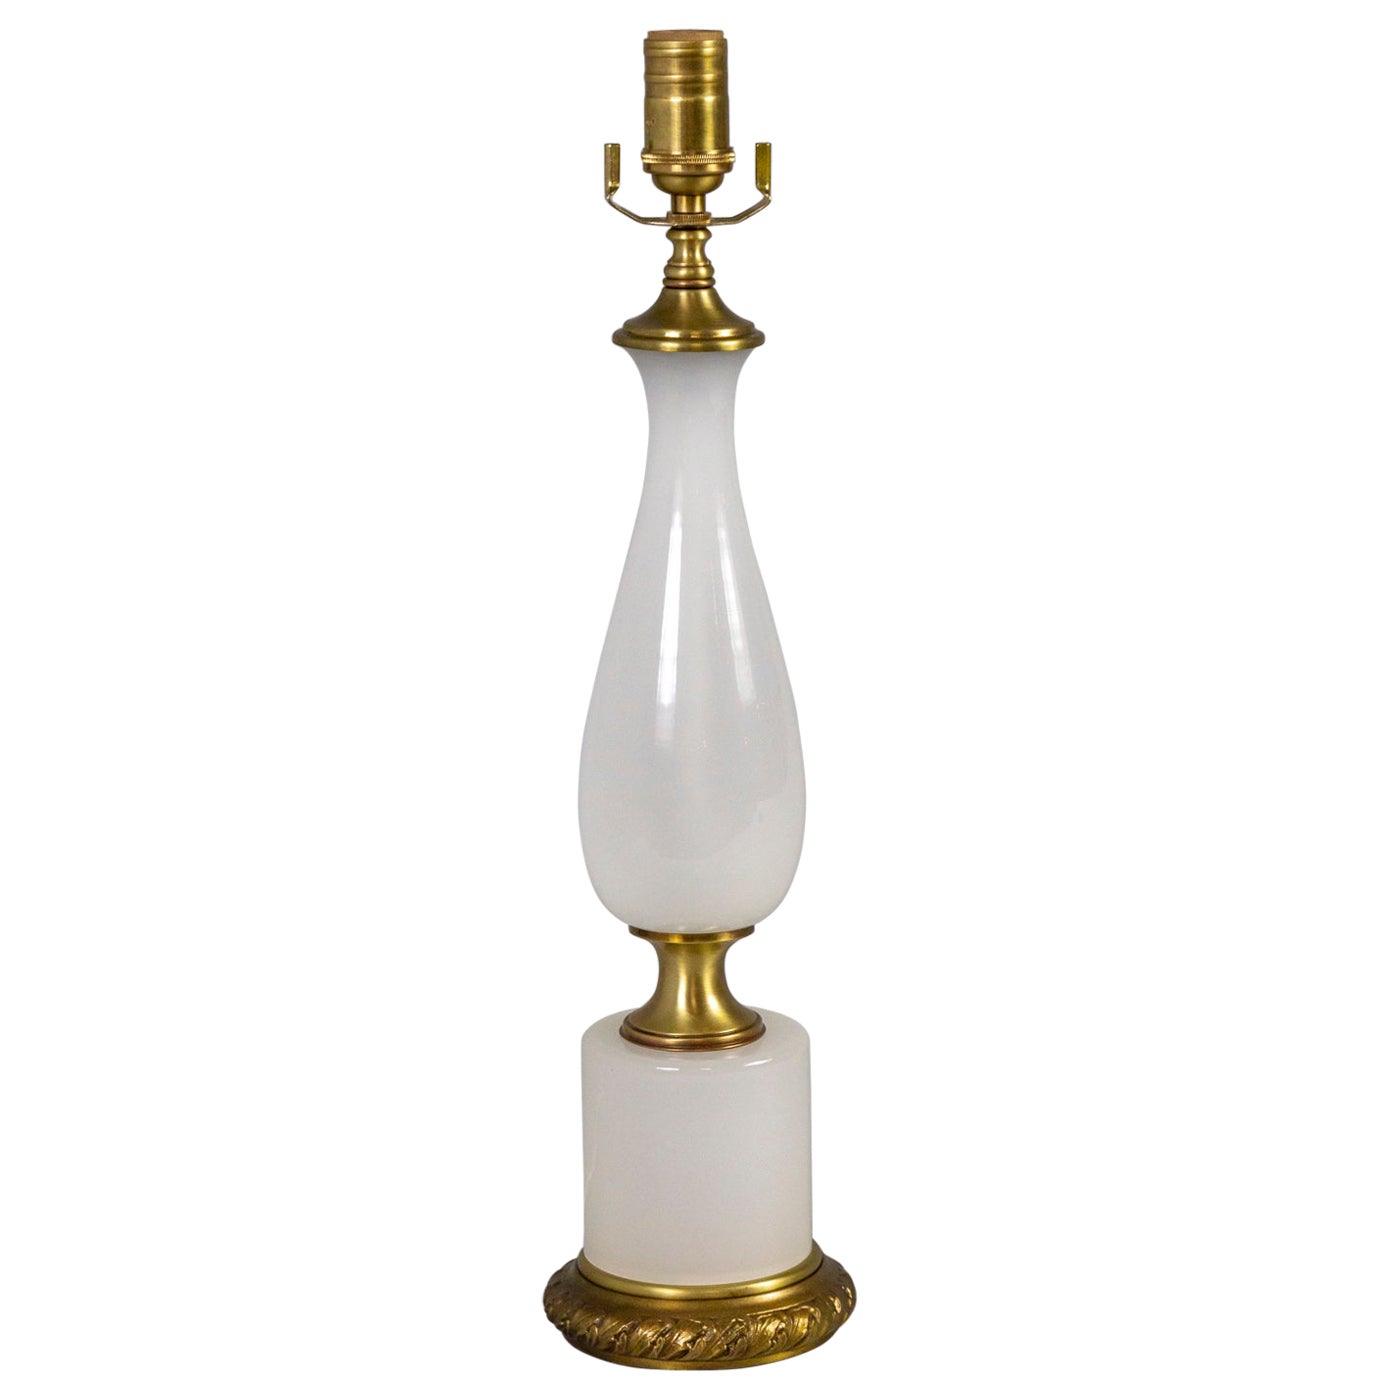 Milieu du 20e siècle. Lampe en verre opalin blanc et laiton - Frederick Cooper